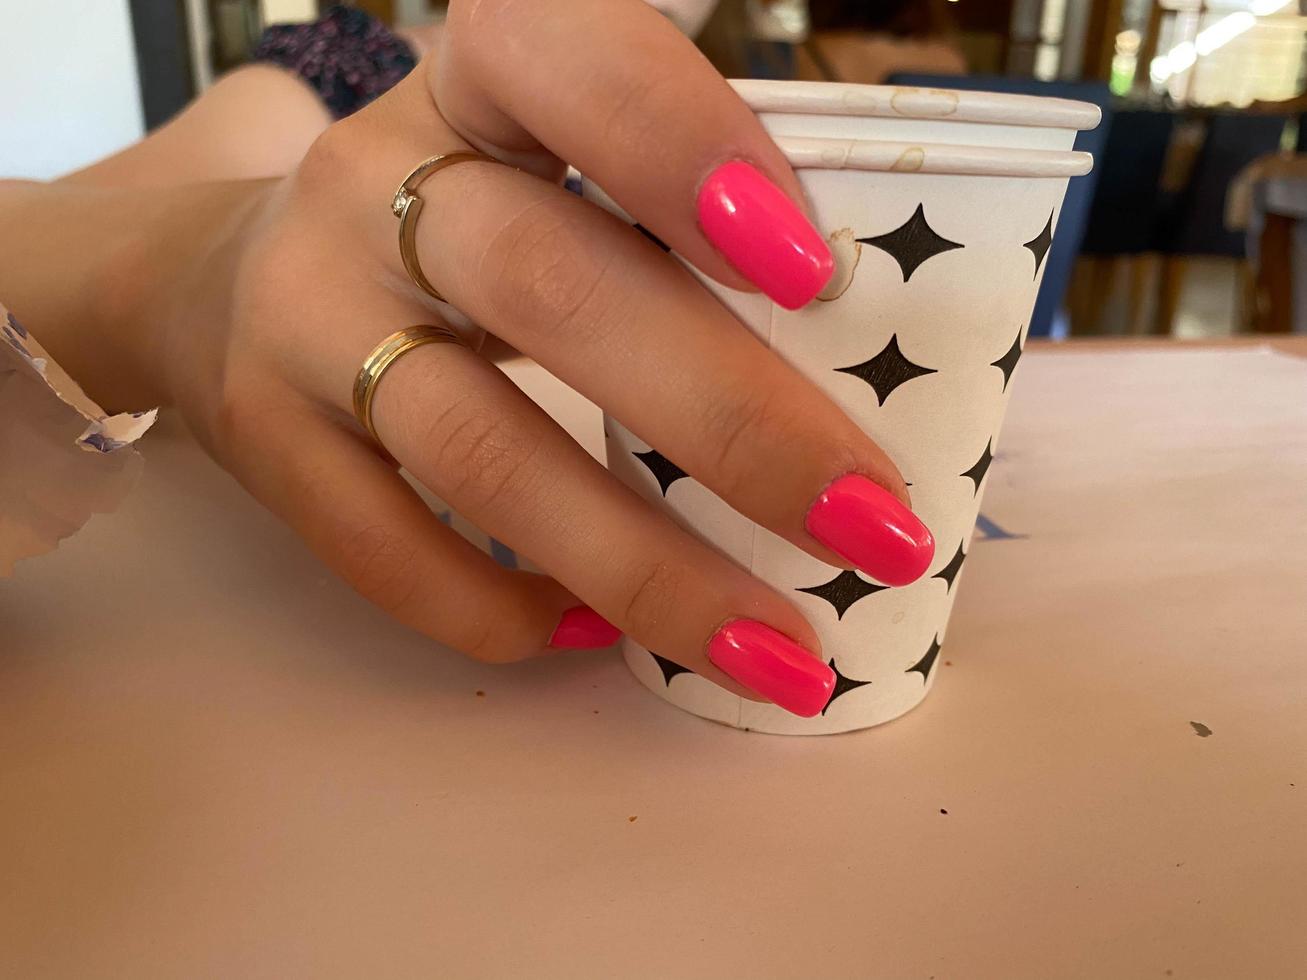 kopp av kaffe i kvinnas händer med ljus röd manikyr foto